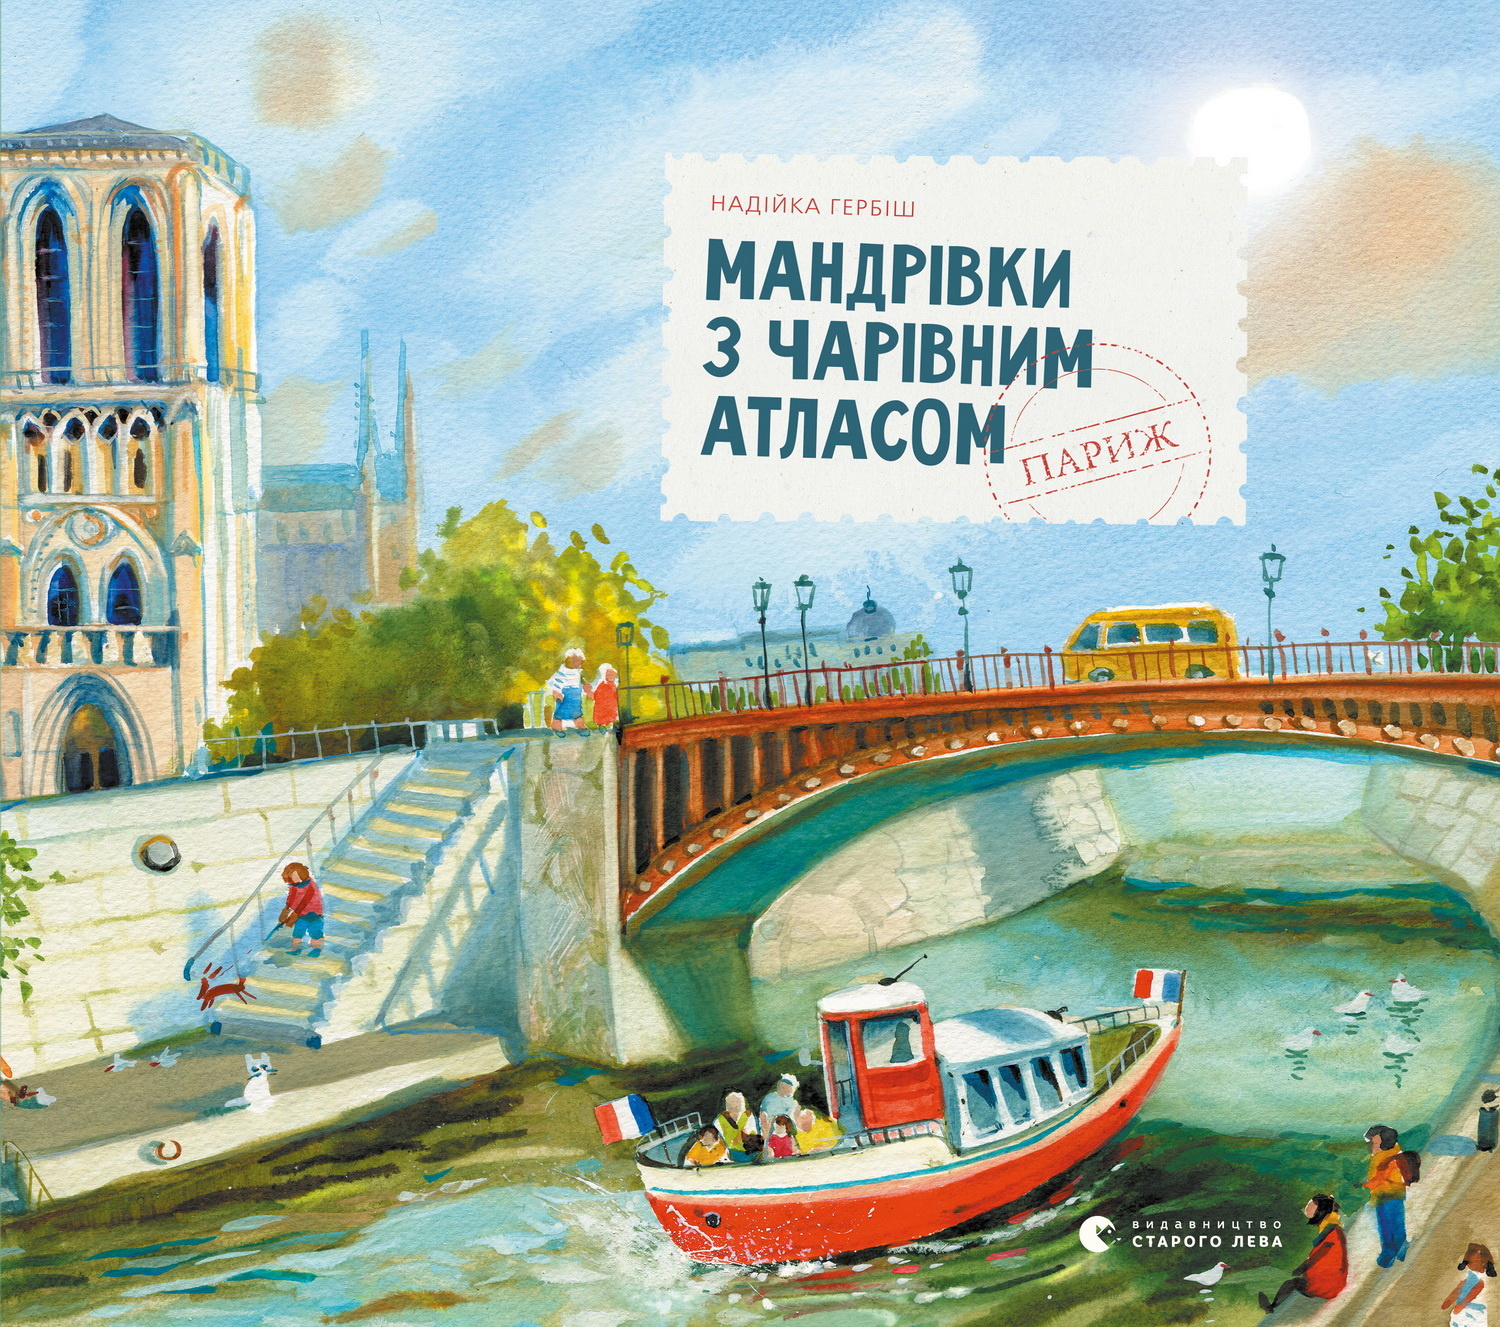 Мандрівки з Чарівним Атласом: Париж. Автор — Надійка Гербіш. 